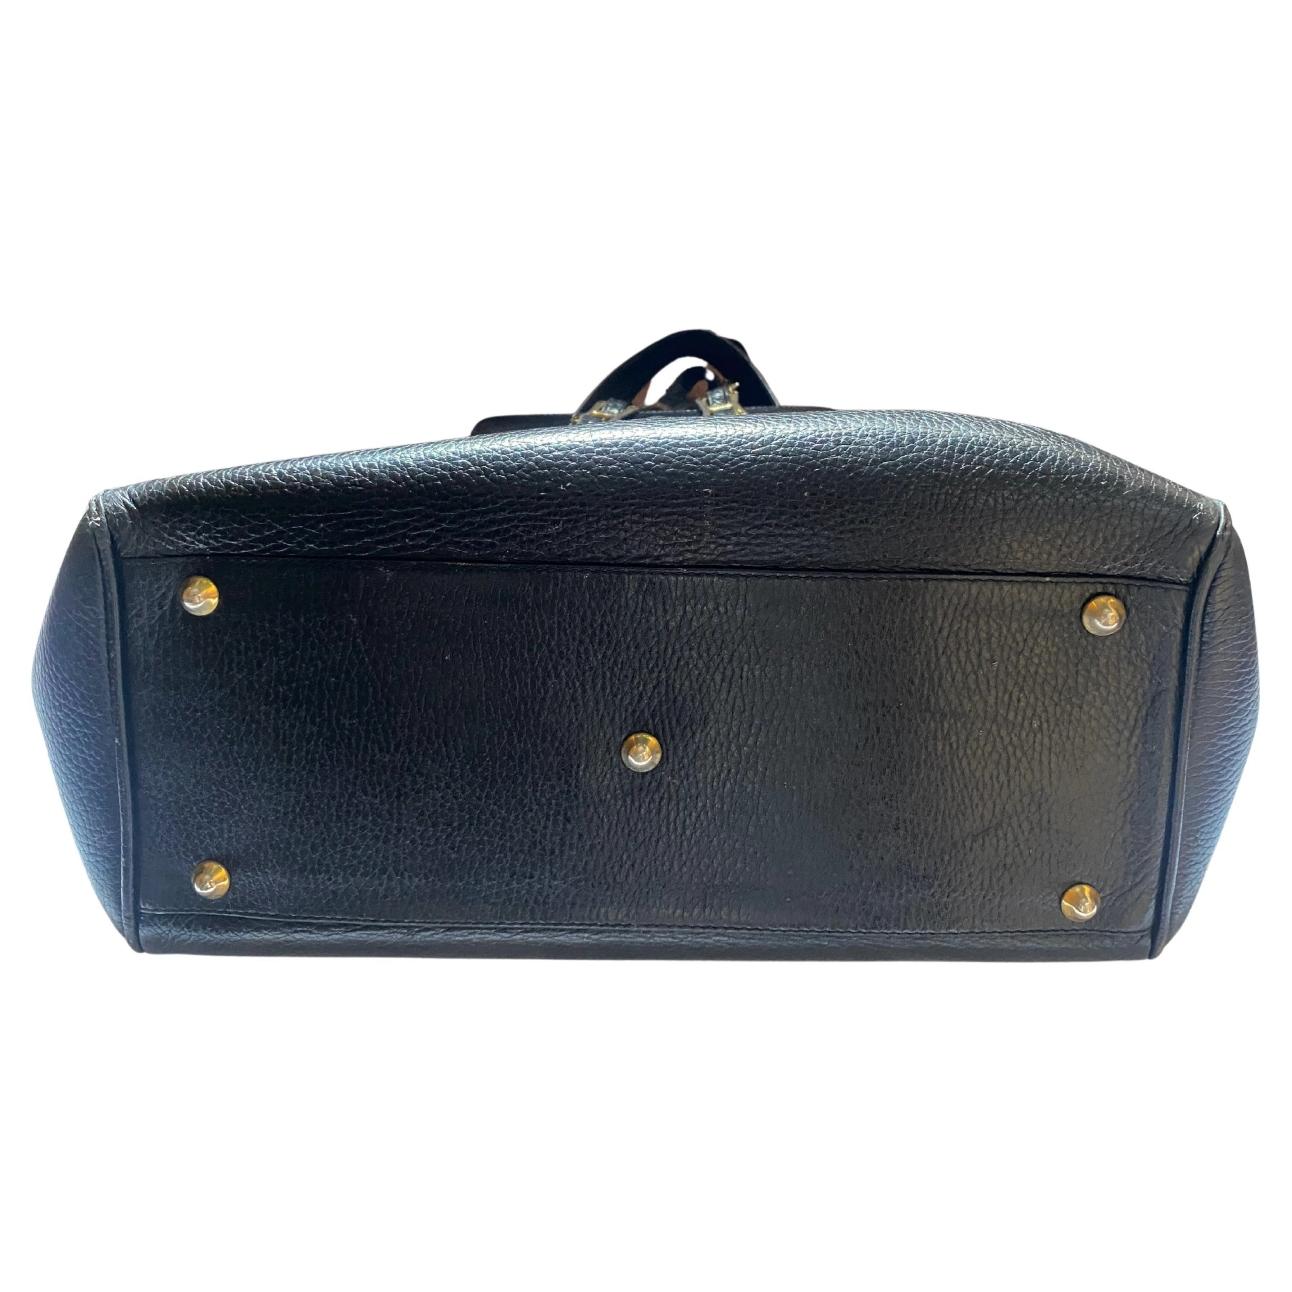 1990s Gianni Versace Black Stud Medusa Leather Shoulder Bag For Sale 2